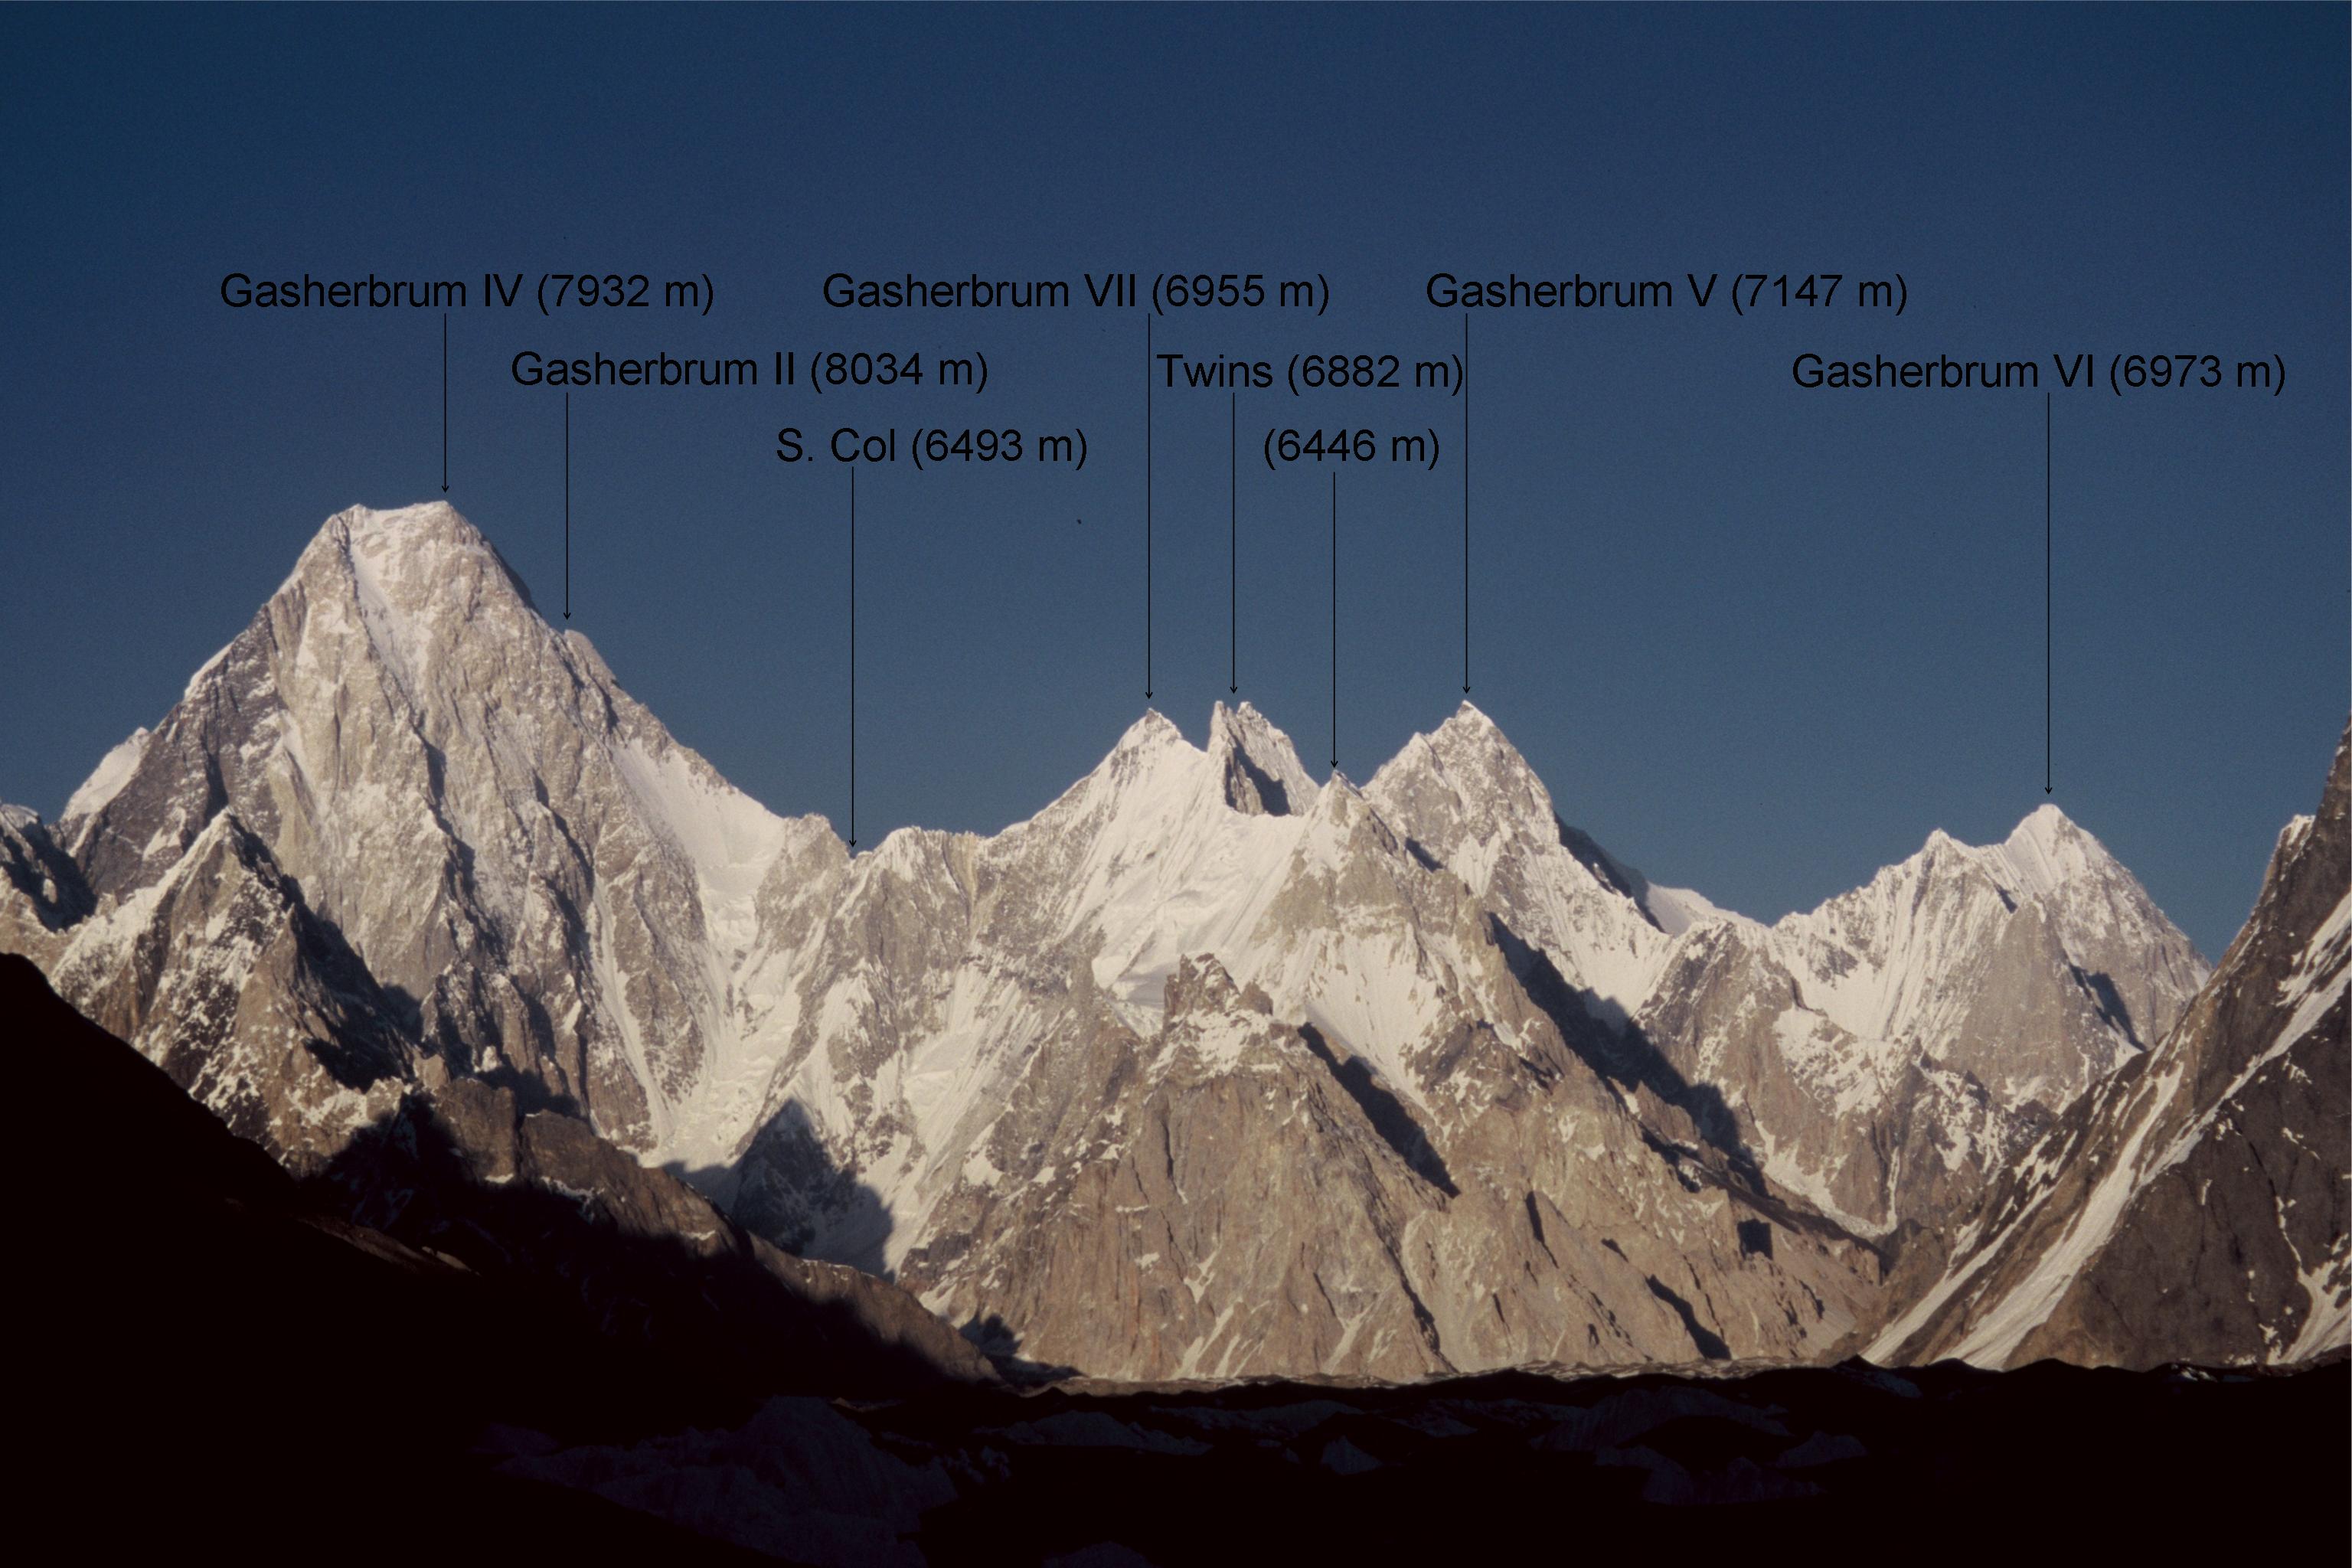  Гашербрум Твинс (Gasherbrum Twins), две вершины - близнецы выстой  6882 метров, находящиеся в многовершинном массиве Гашербрум